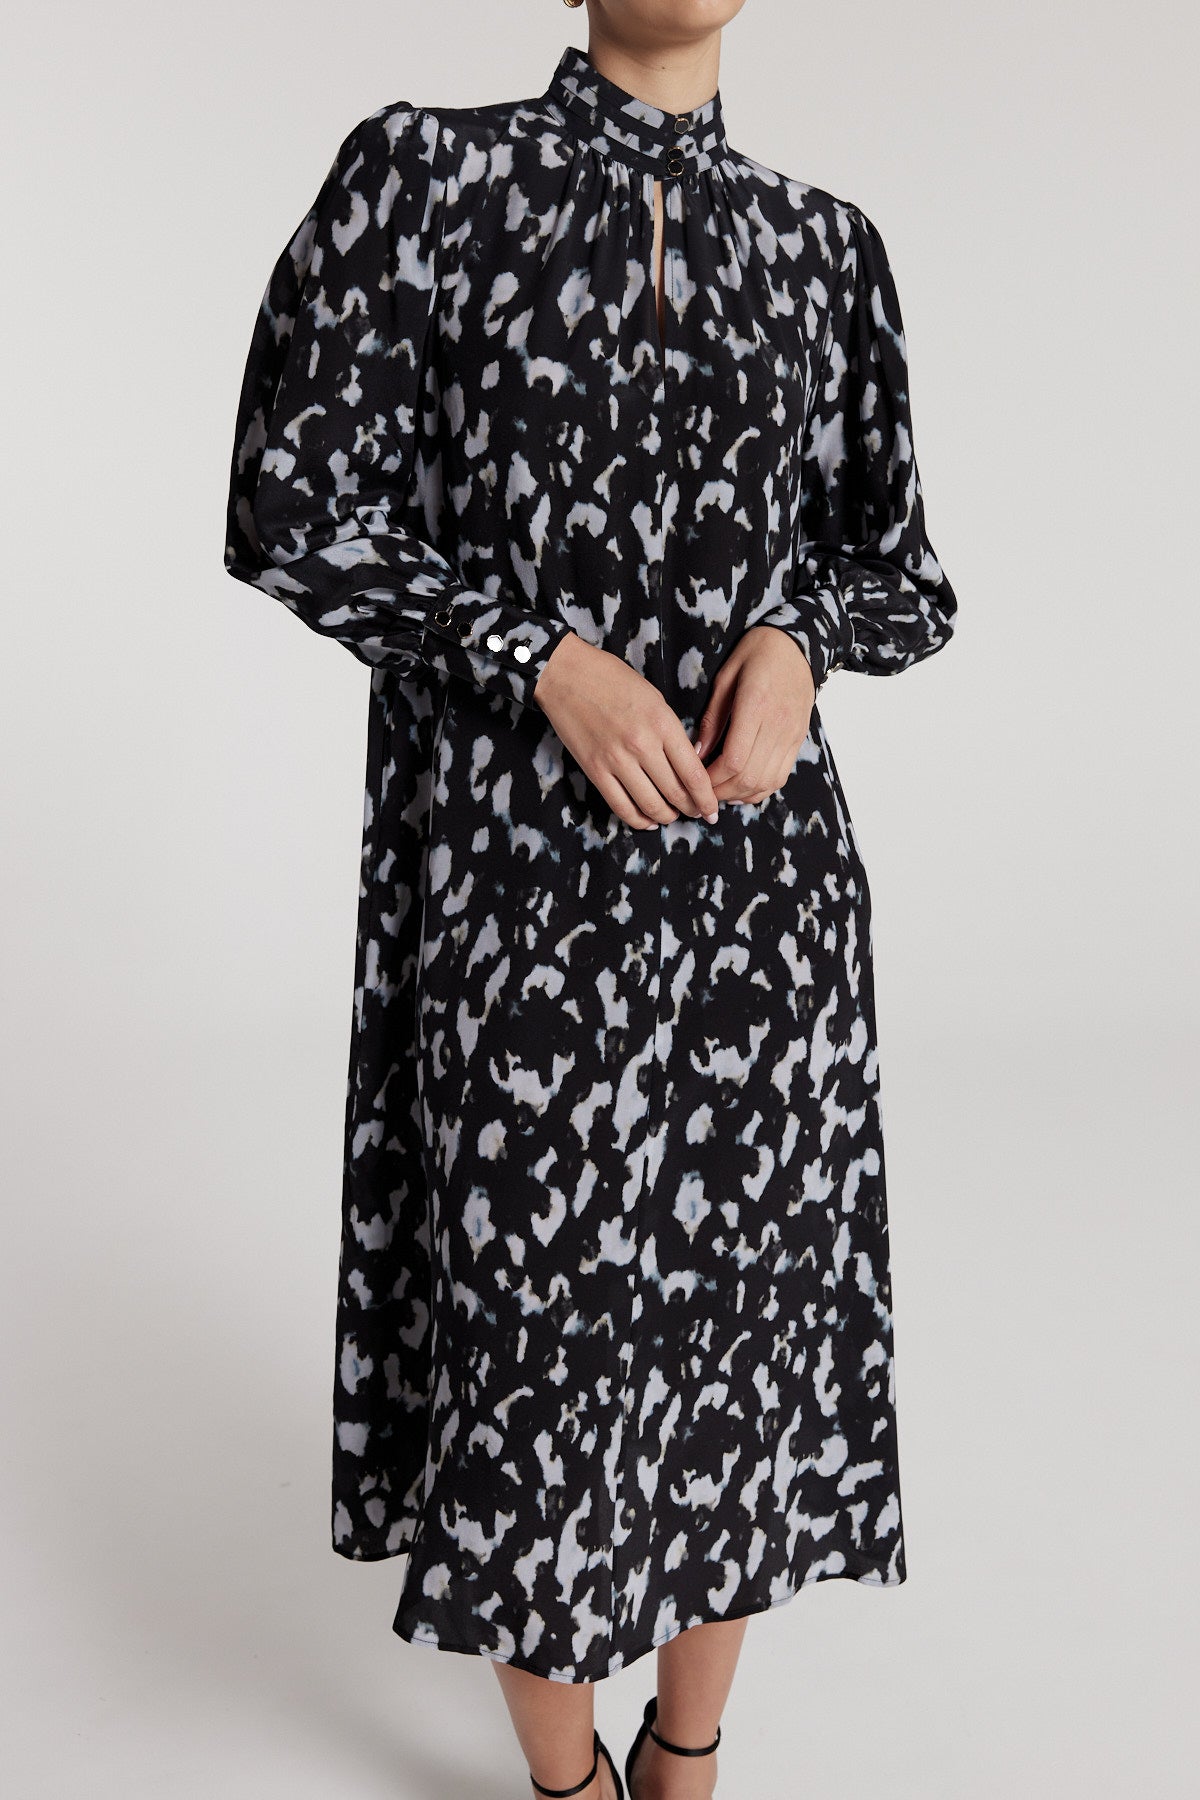 Lucinda Silk Dress - Black/Grey-Perri Cutten